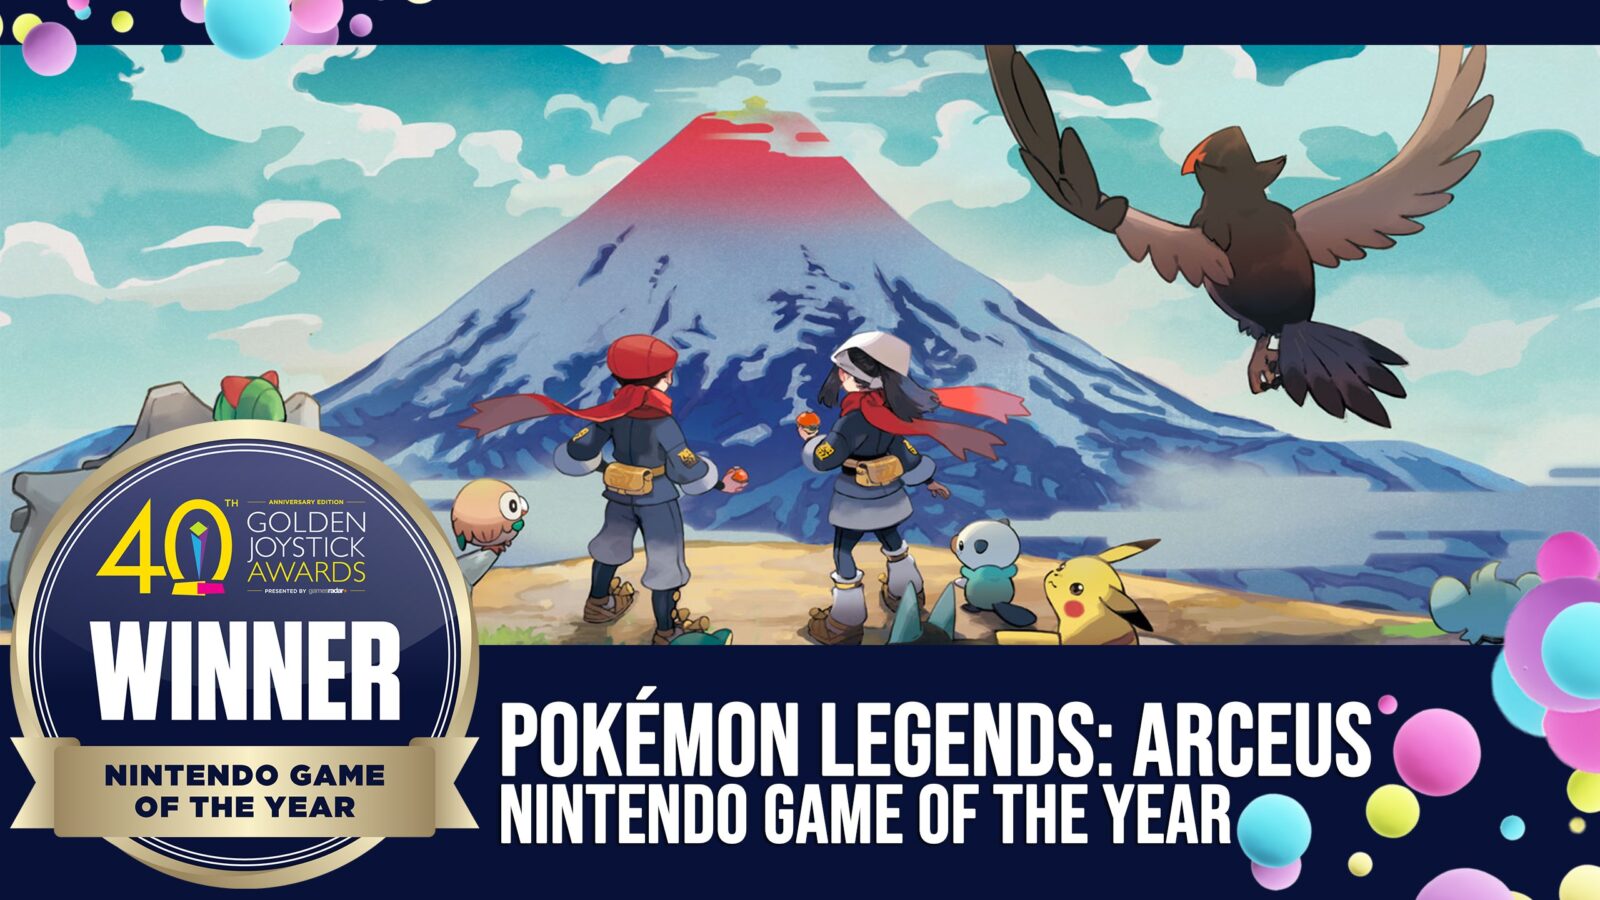 REVIEW  Pokémon Legends Arceus é um dos melhores games já feitos